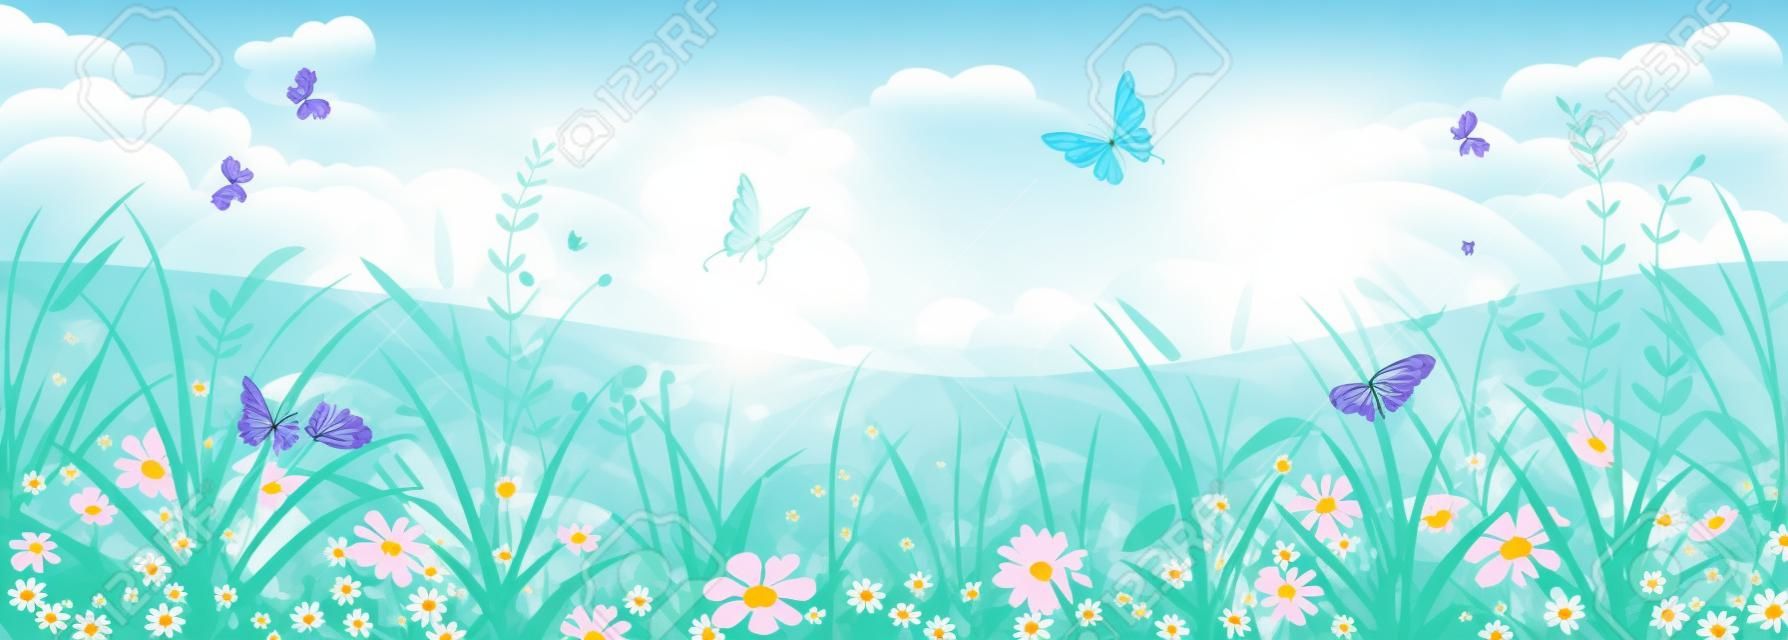 Virágos nyári vagy tavaszi táj, rét virággal, kék ég és a pillangók